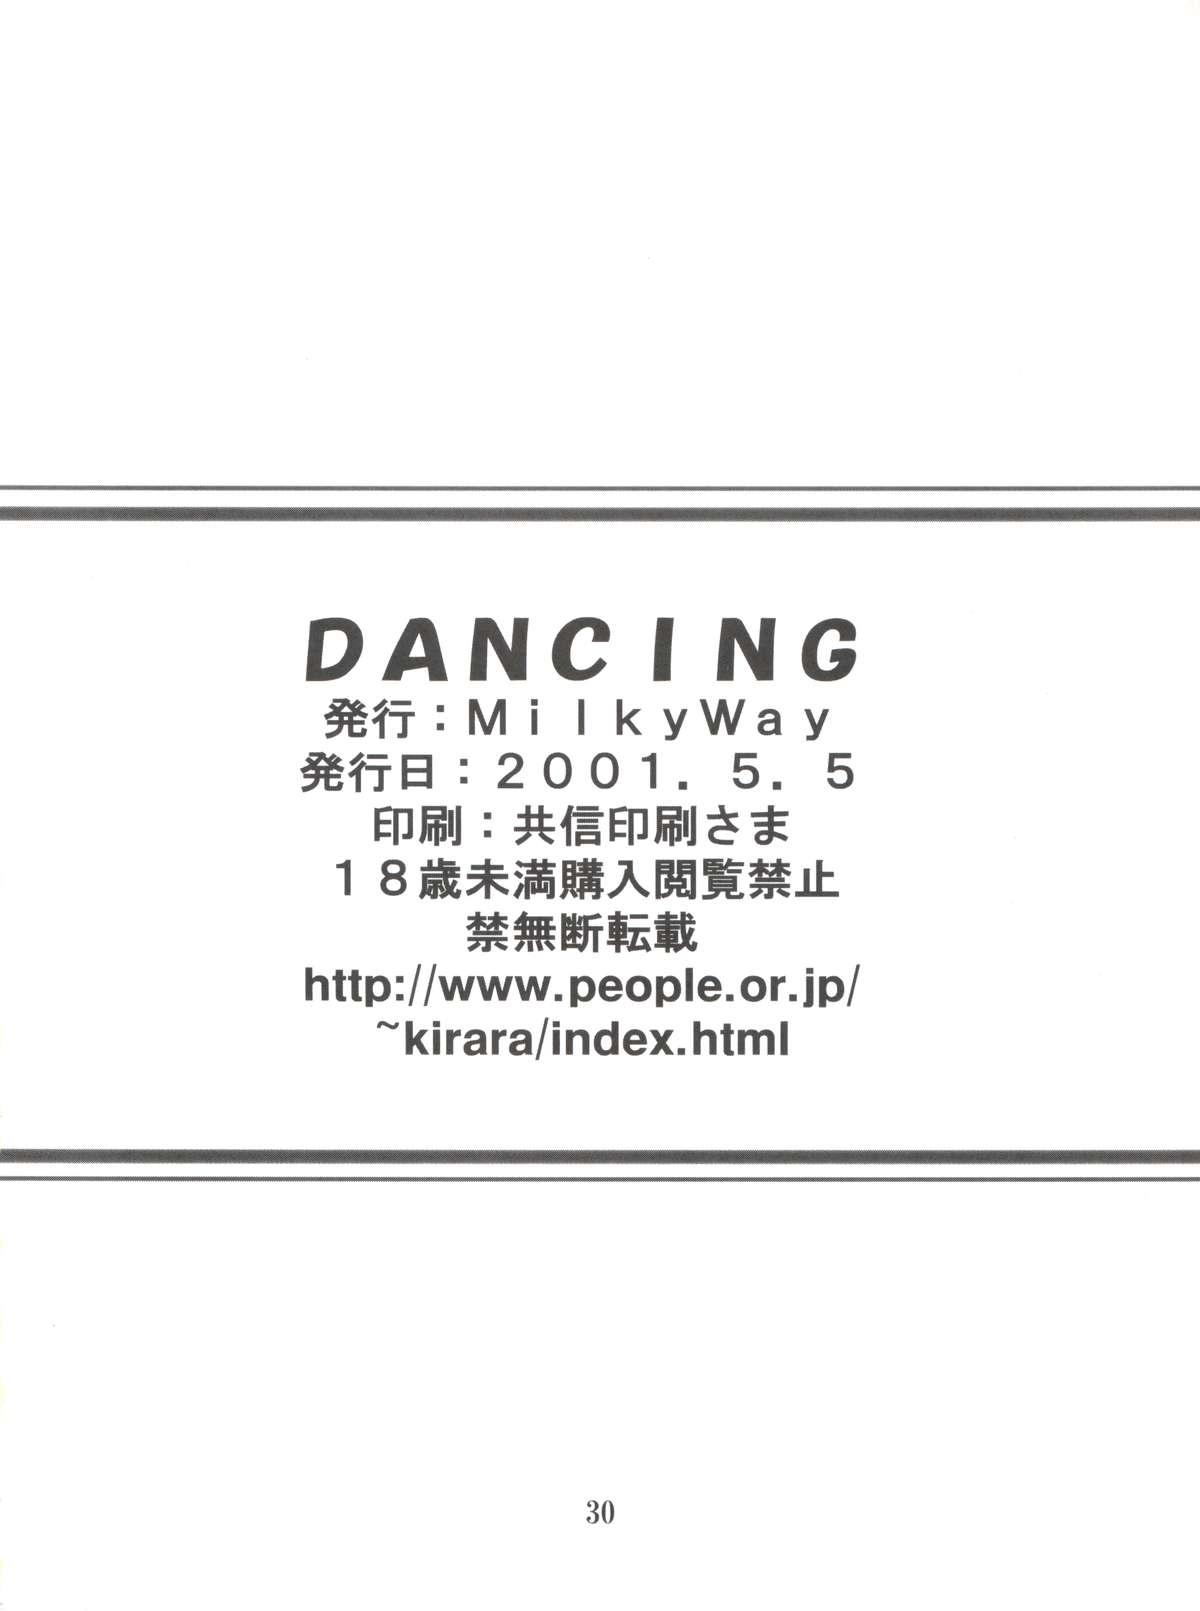 Dancing 28